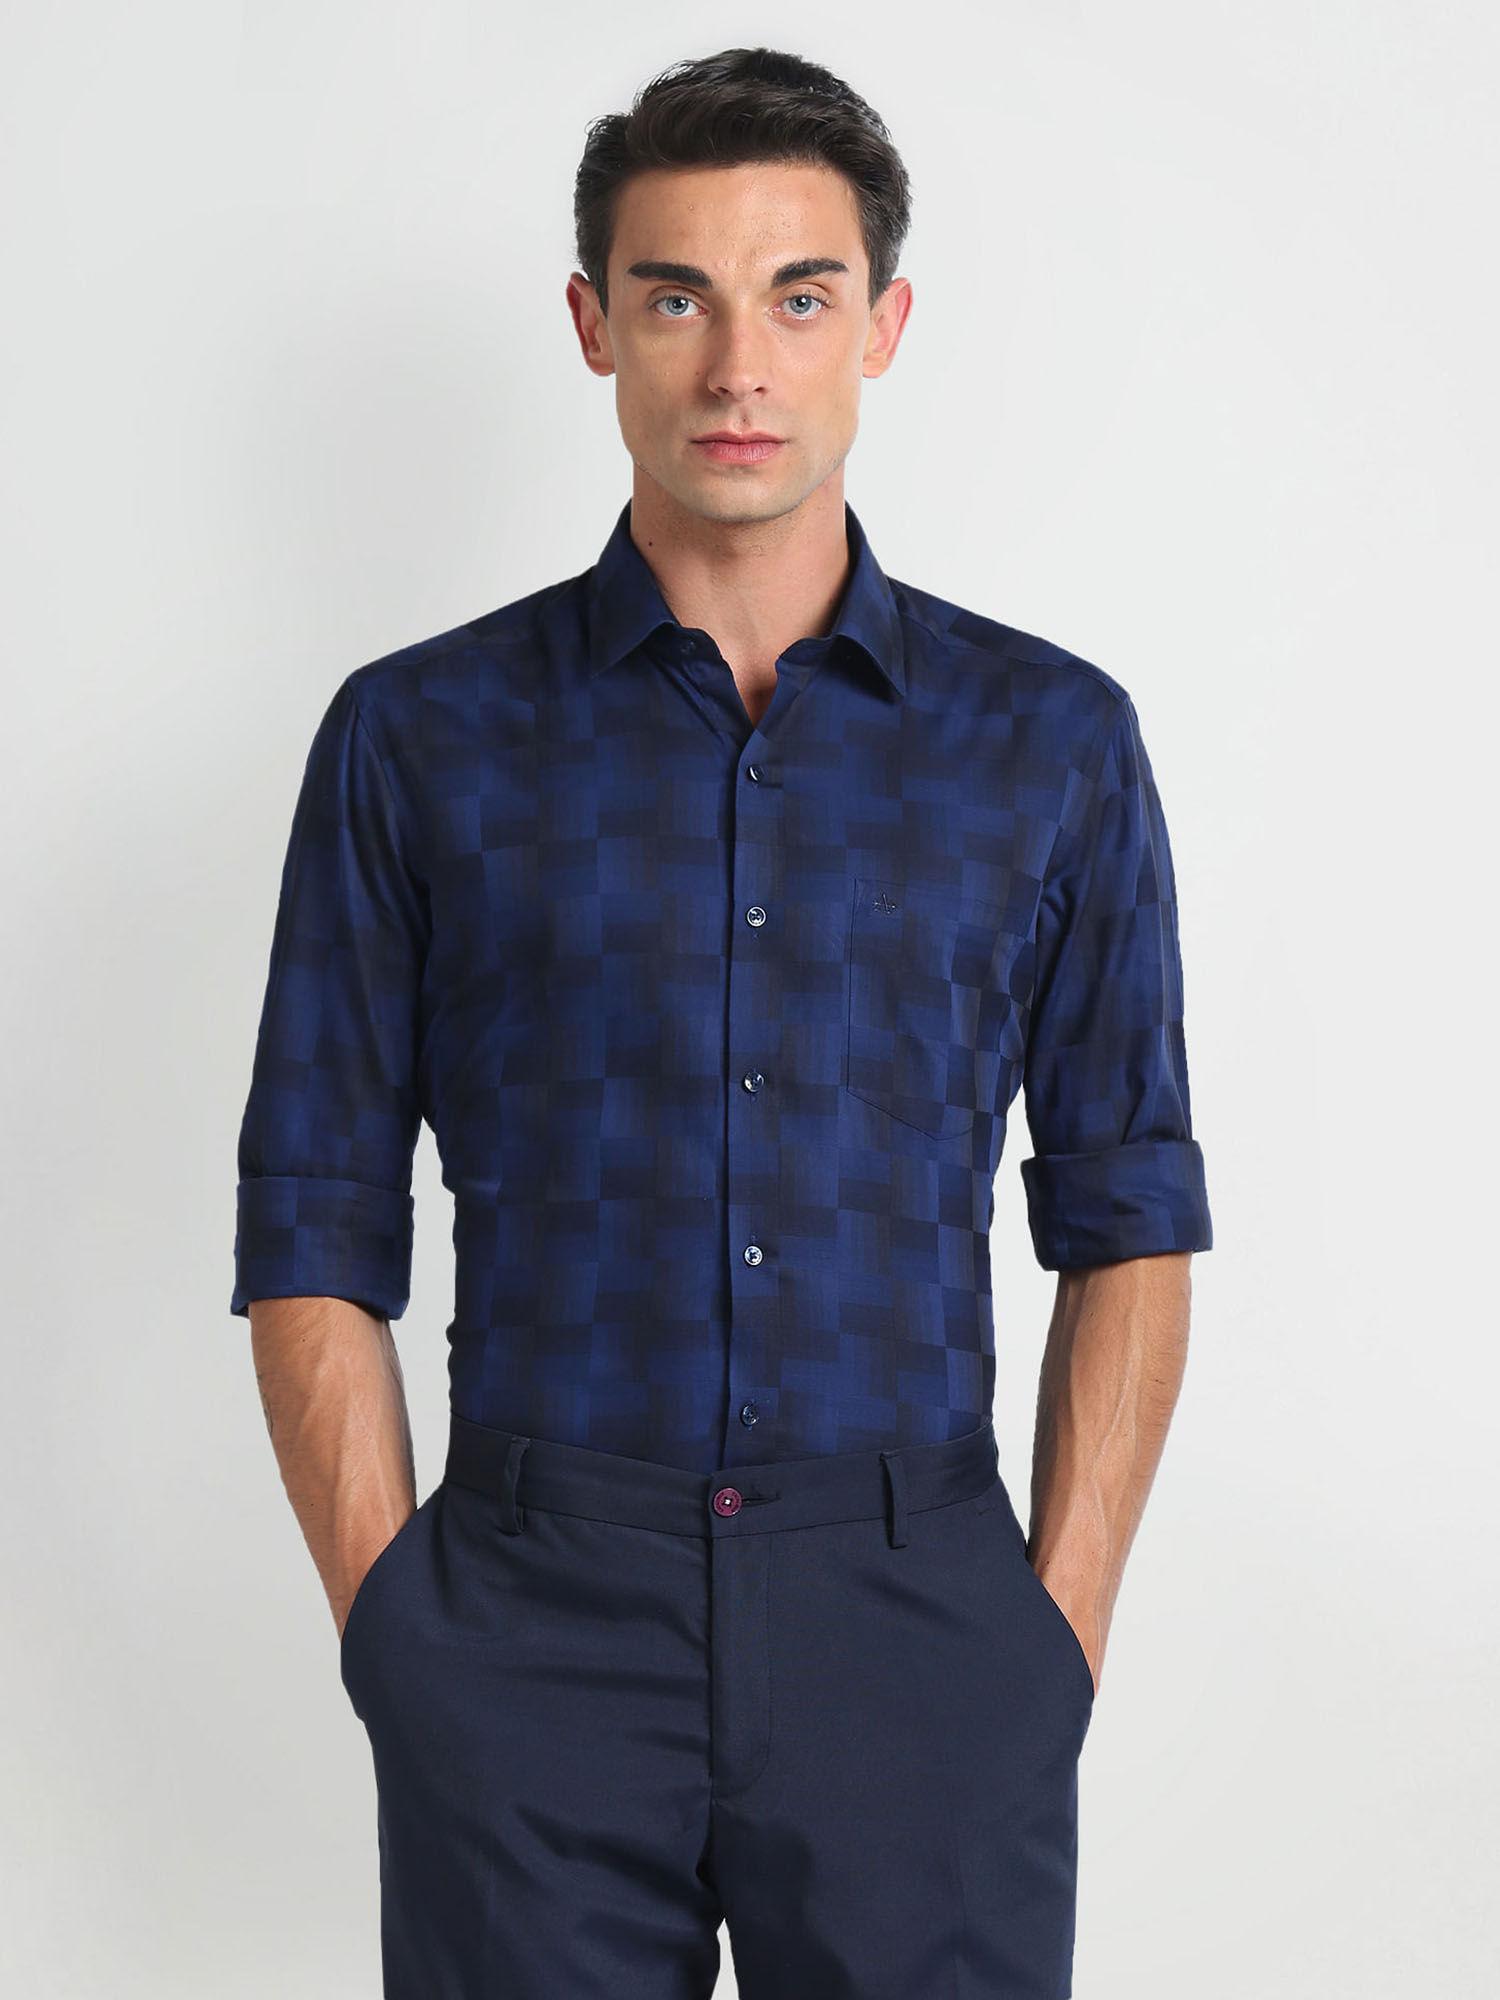 Blue Checks Twill Formal Shirt